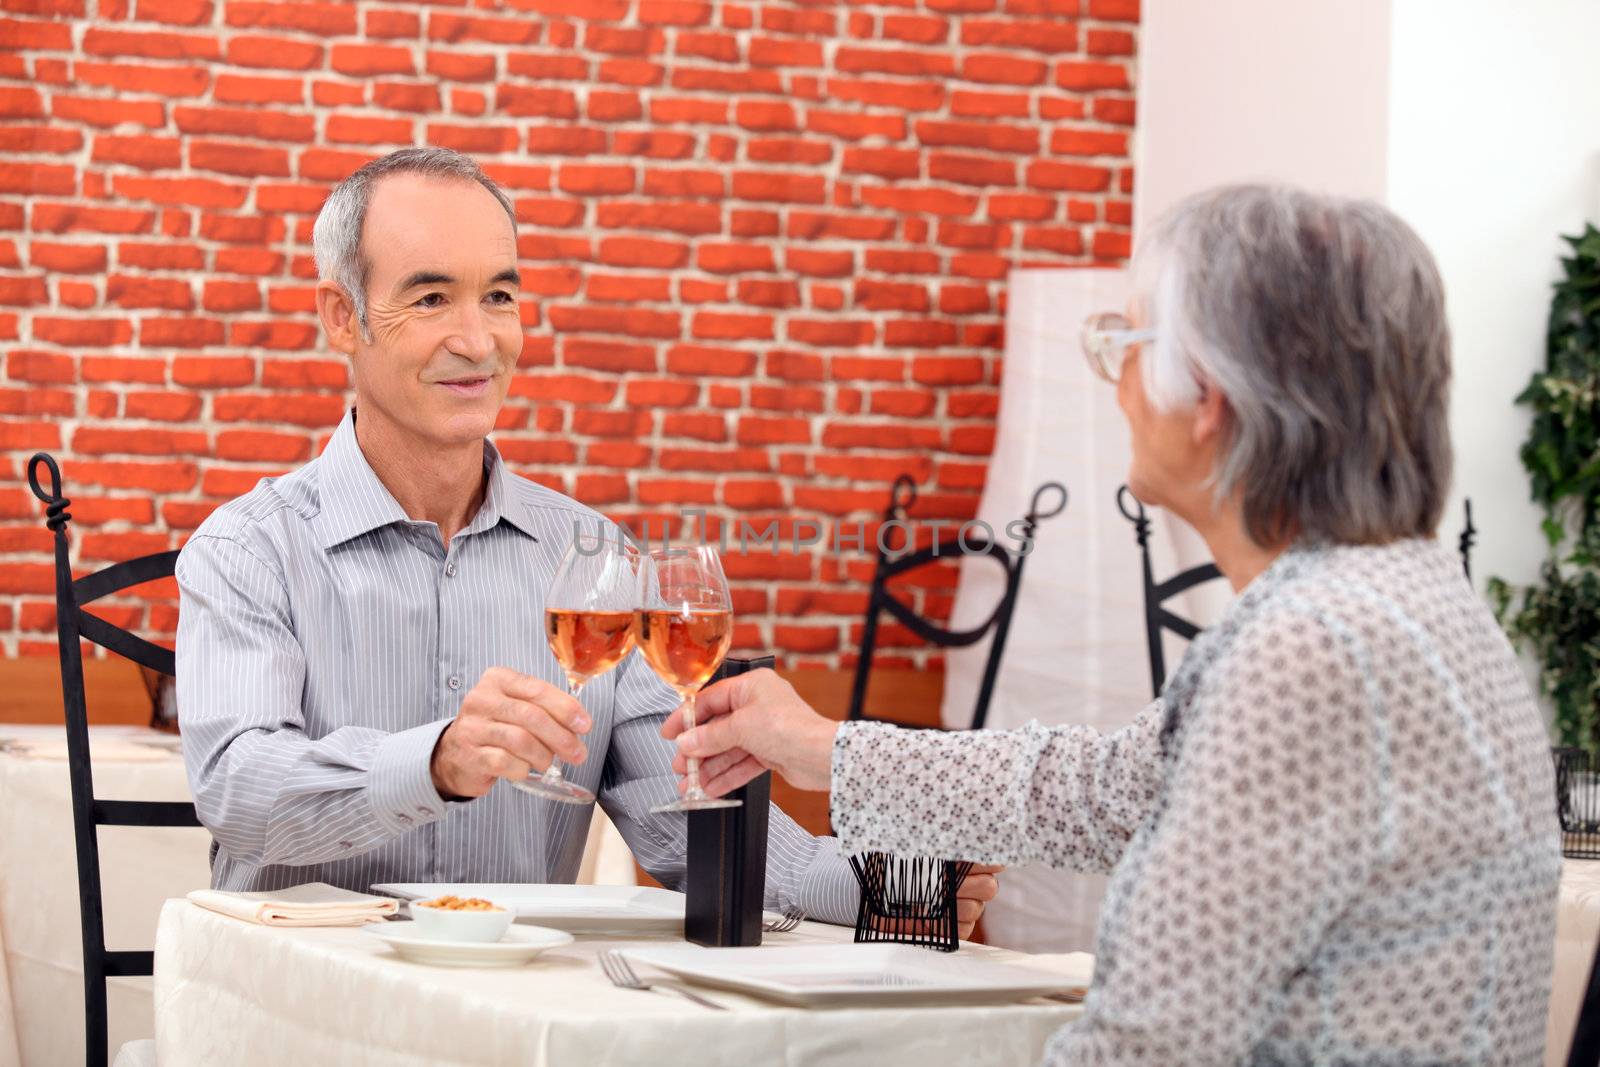 Elderly couple eating in restaurant by phovoir